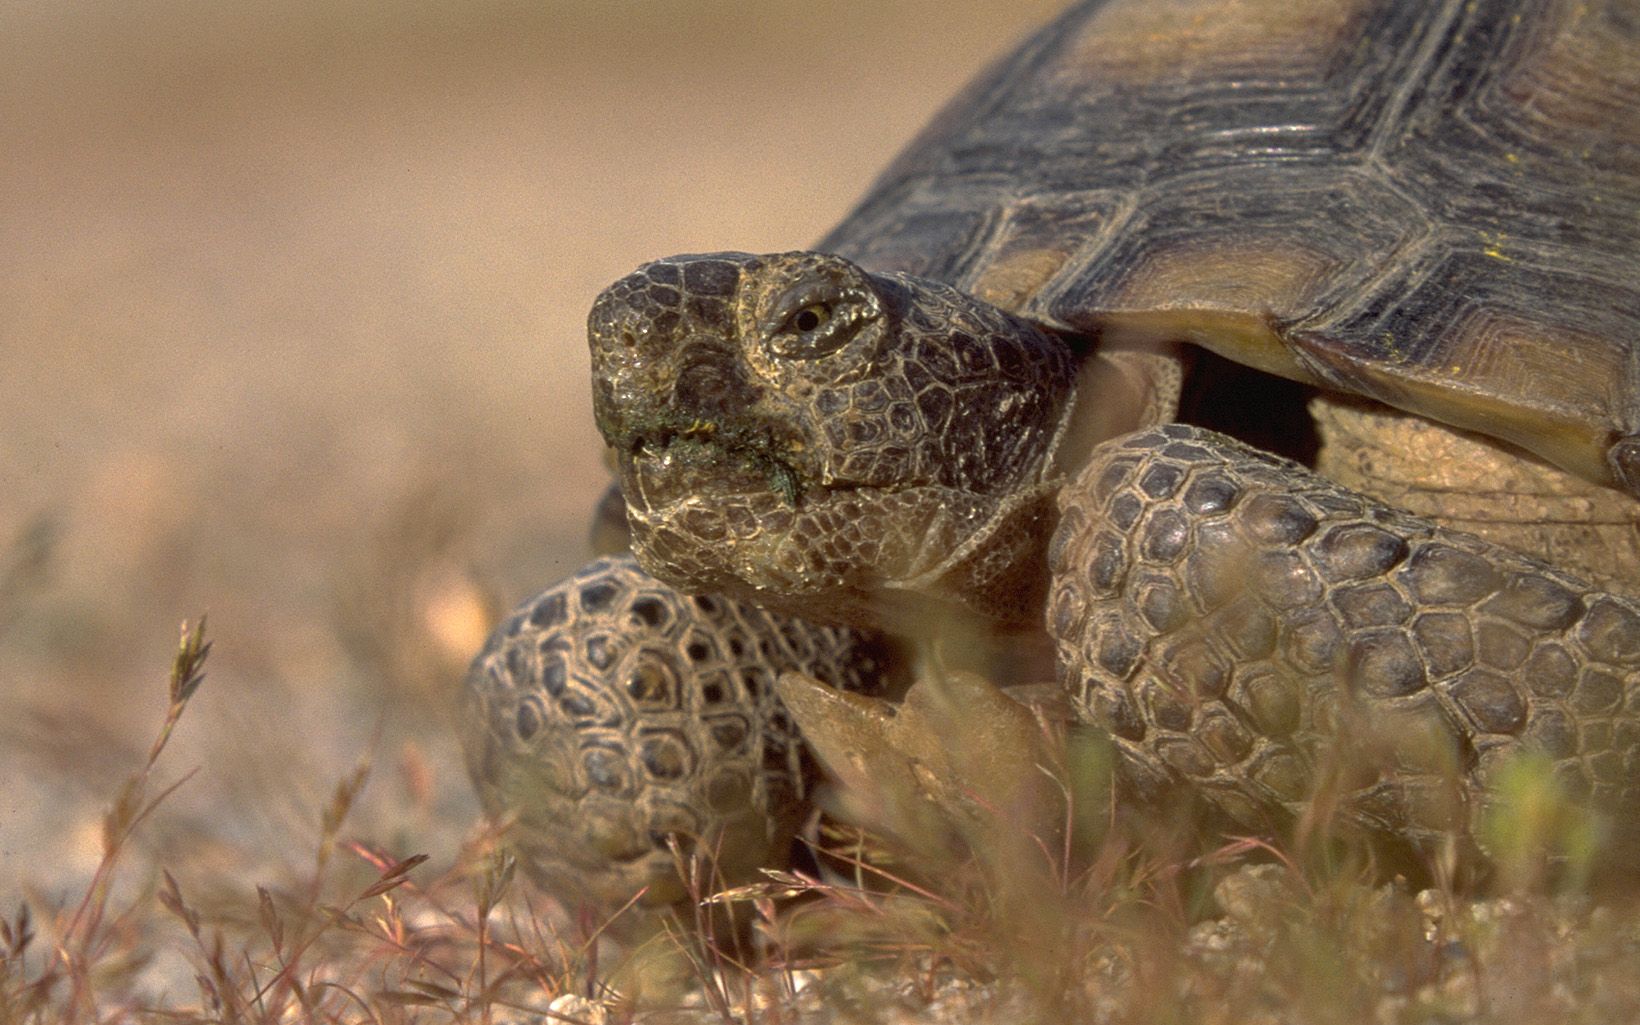 Desert tortoise Parklet Slideshow 500 by 720